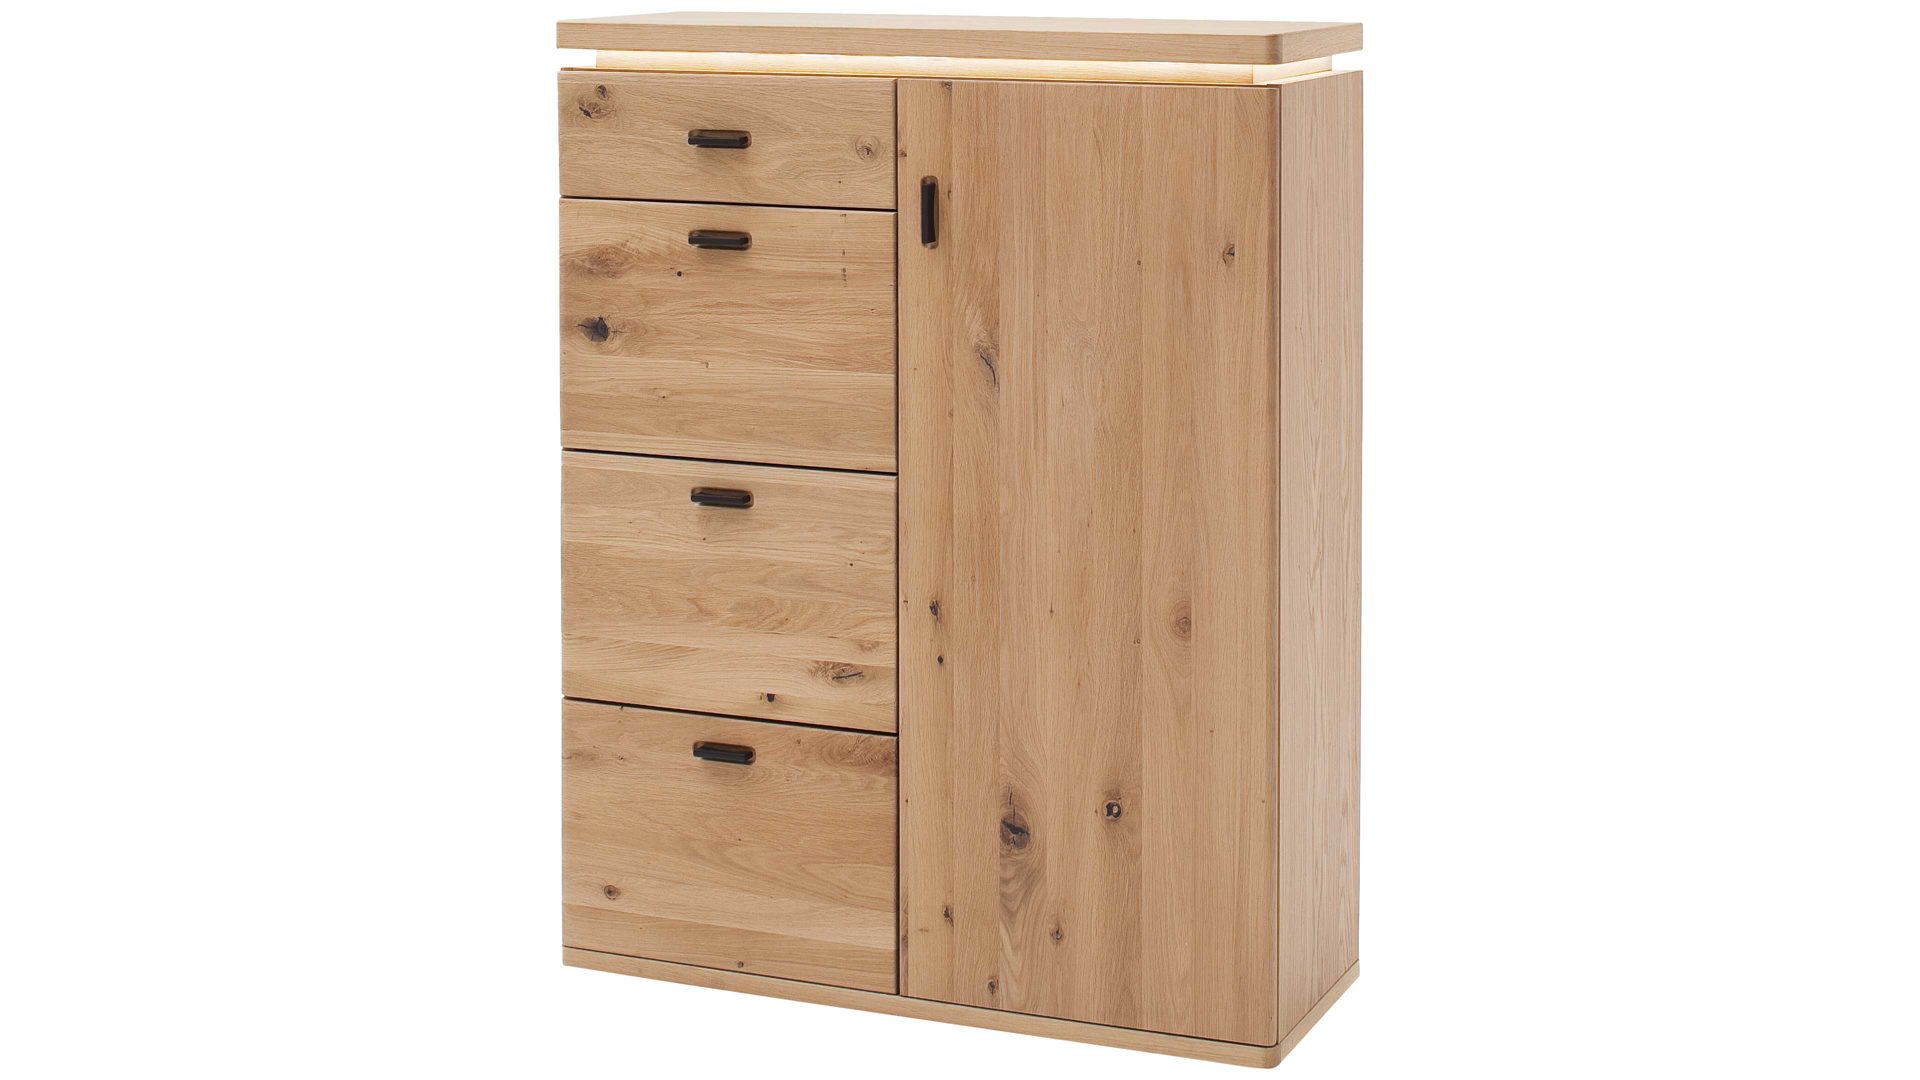 Kombikommode Mca furniture aus Holz in Holzfarben Garderobenprogramm Barcelona - Kombikommode geölte Wildeiche – vier Schubladen, eine Tür, Breite ca. 100 cm